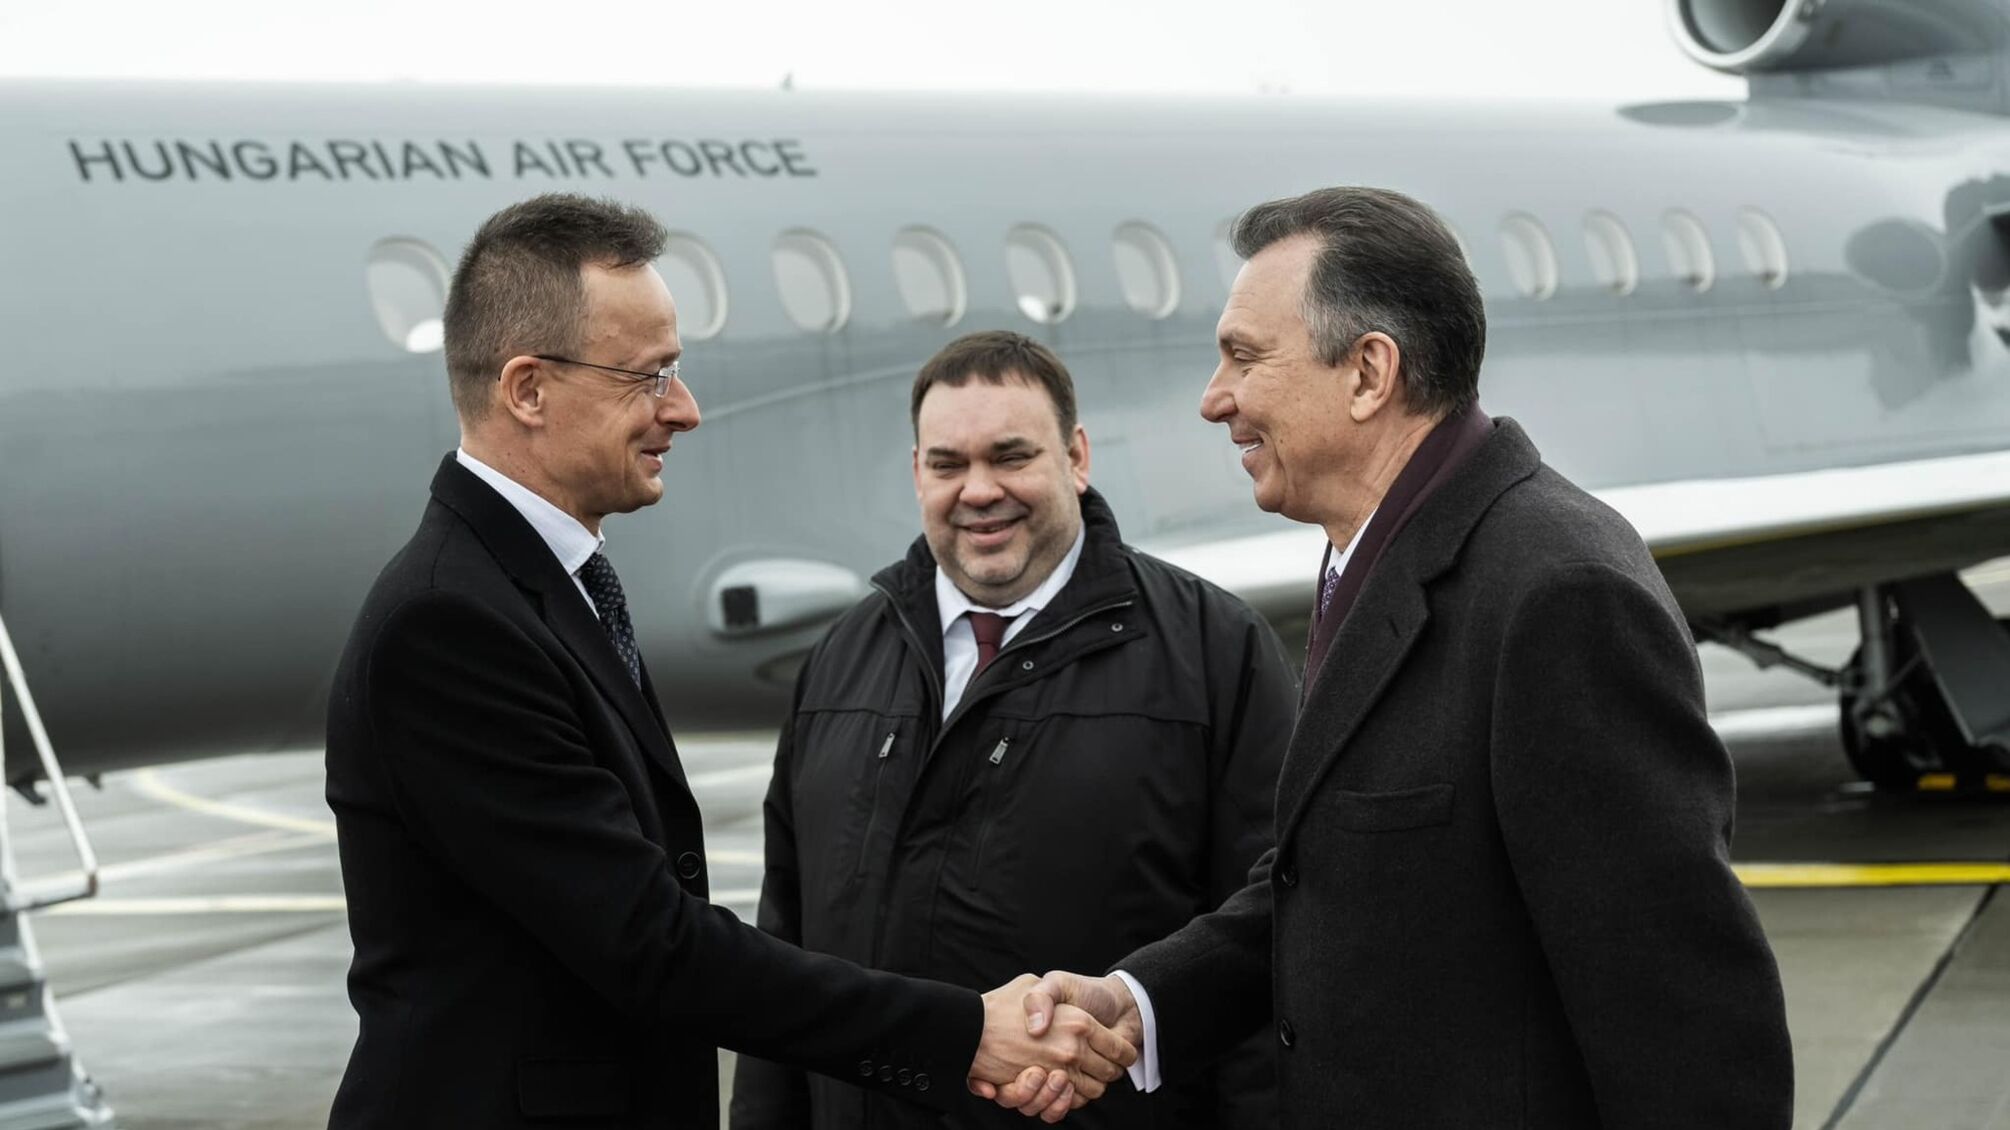 Глава МИД Венгрии Сийярто прилетел в Минск, чтобы 'говорить о мире' в Украине